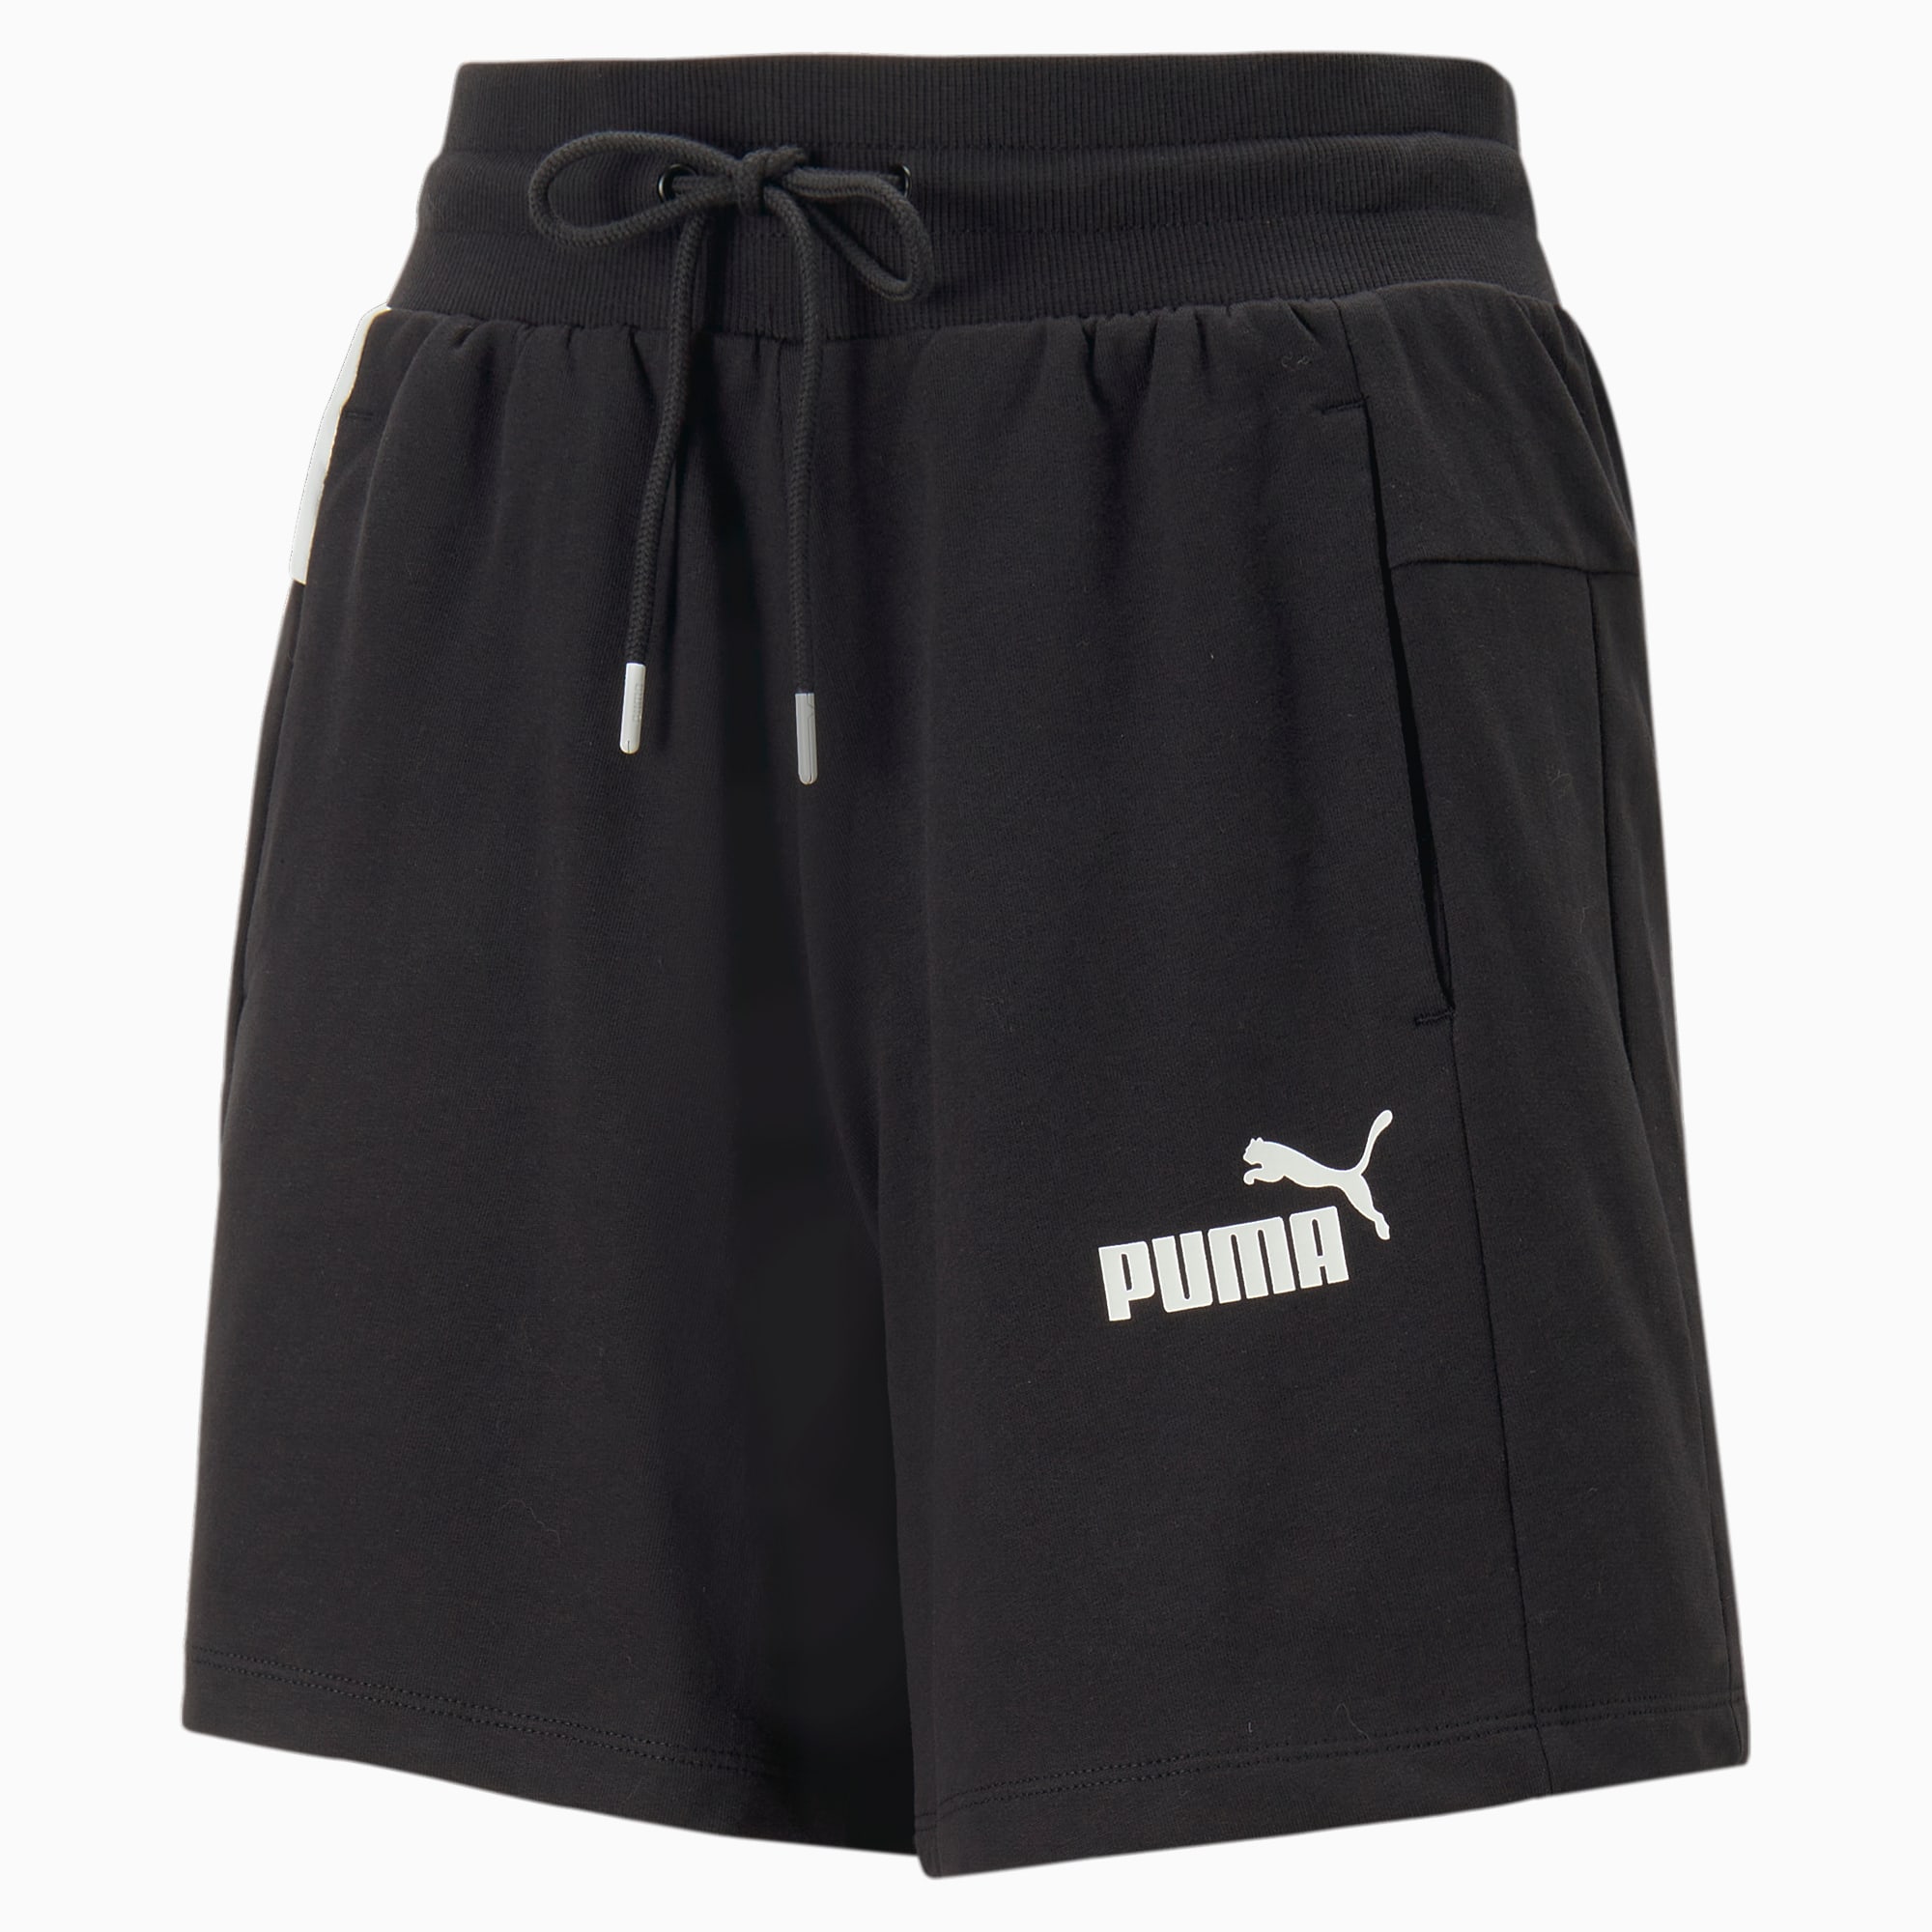 PUMA Around The Block Shorts Ft Women, Black/White, Size M, Clothing